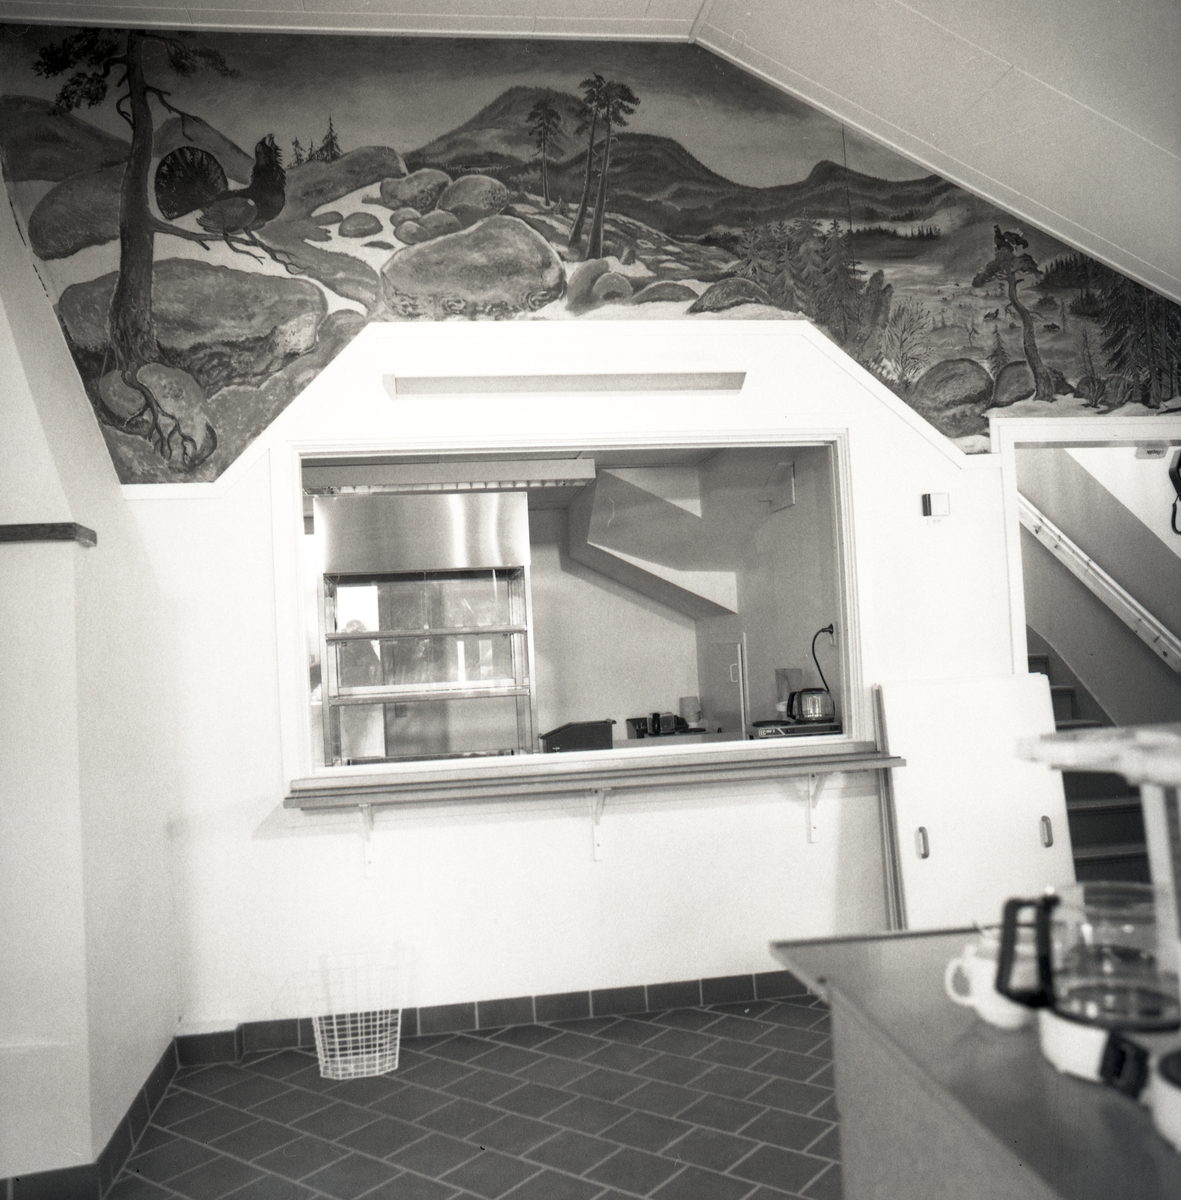 Ett rum med ett litet kök med servering, det finns en monter för bakverk och kaffepannor och kaffemuggar finns det. Ovanför den lilla serveringsluckan är det en väggmålning och man ser en trappa. 1992 Grytan Brunflo.